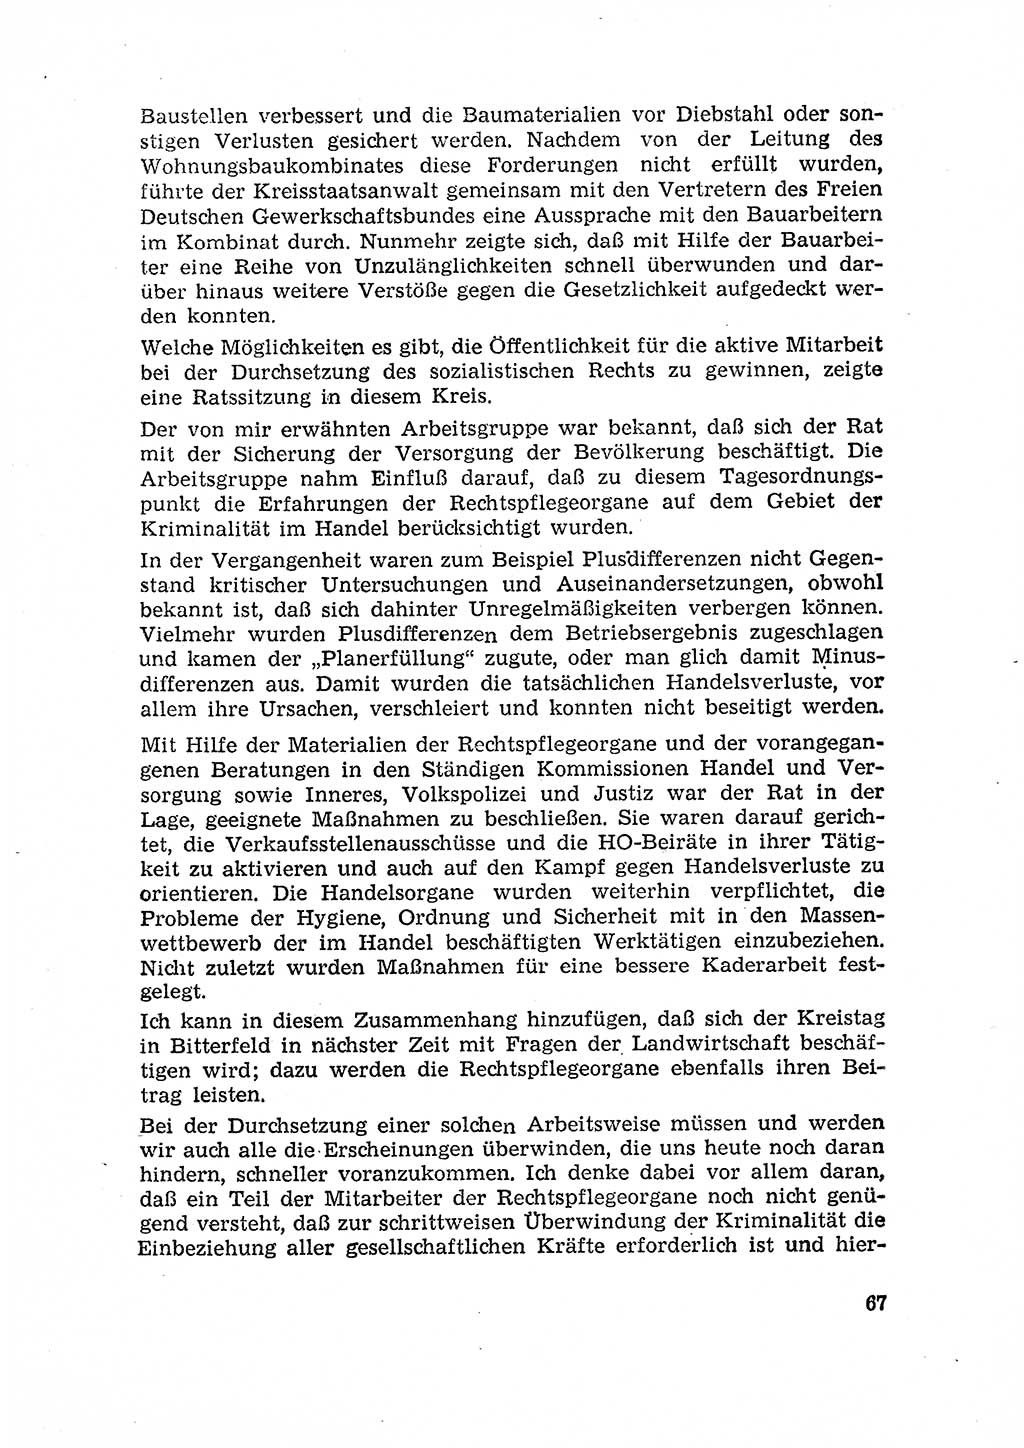 Rechtspflegeerlaß [Deutsche Demokratische Republik (DDR)] 1963, Seite 67 (R.-Pfl.-Erl. DDR 1963, S. 67)